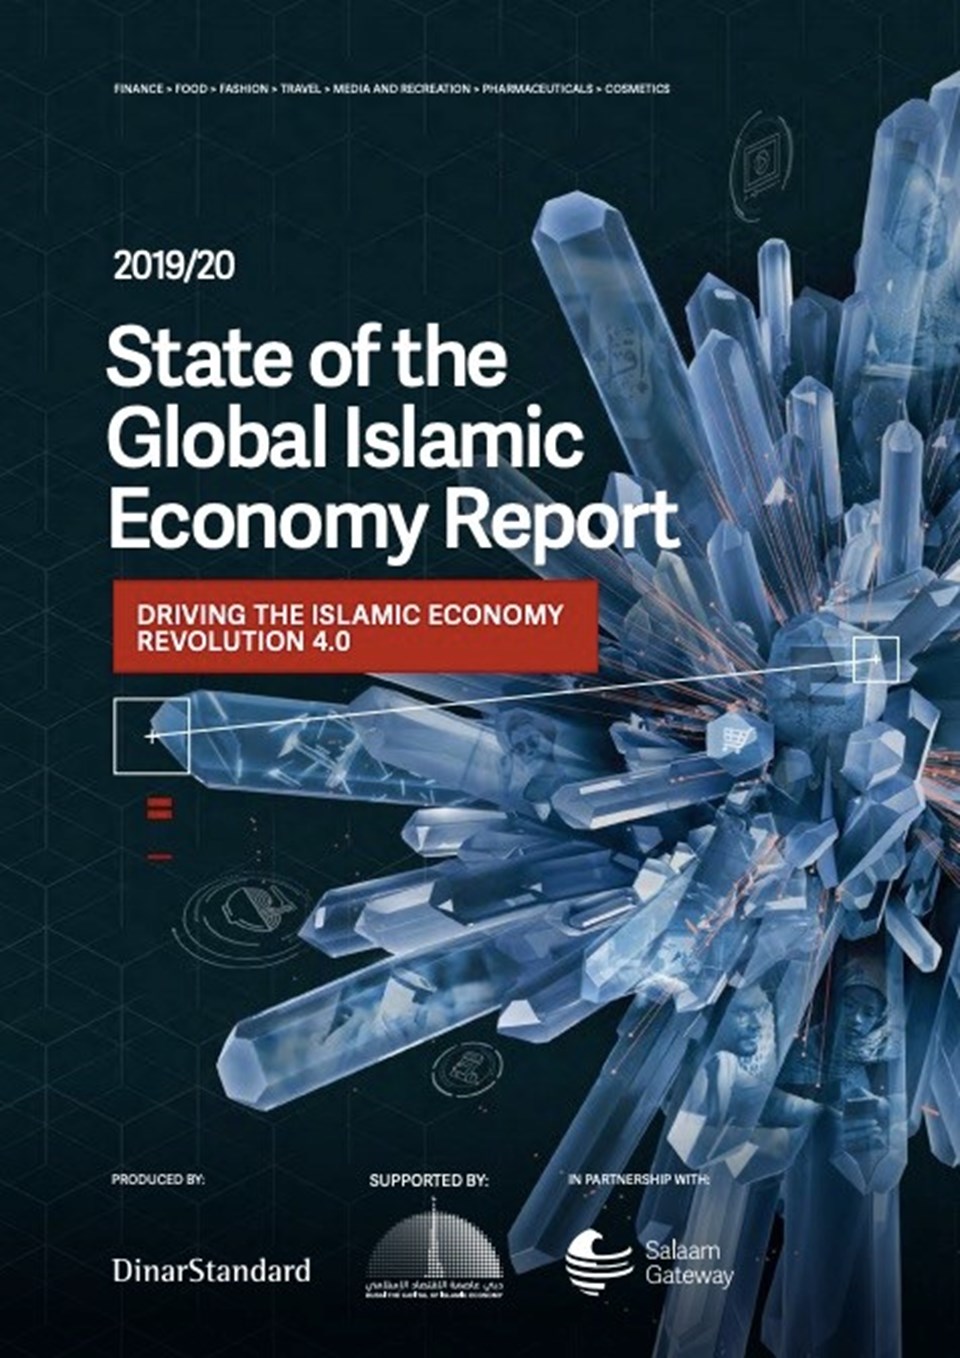 İslami ekonomi dünya ekonomisinin yaklaşık 2 katı büyüdü - 1